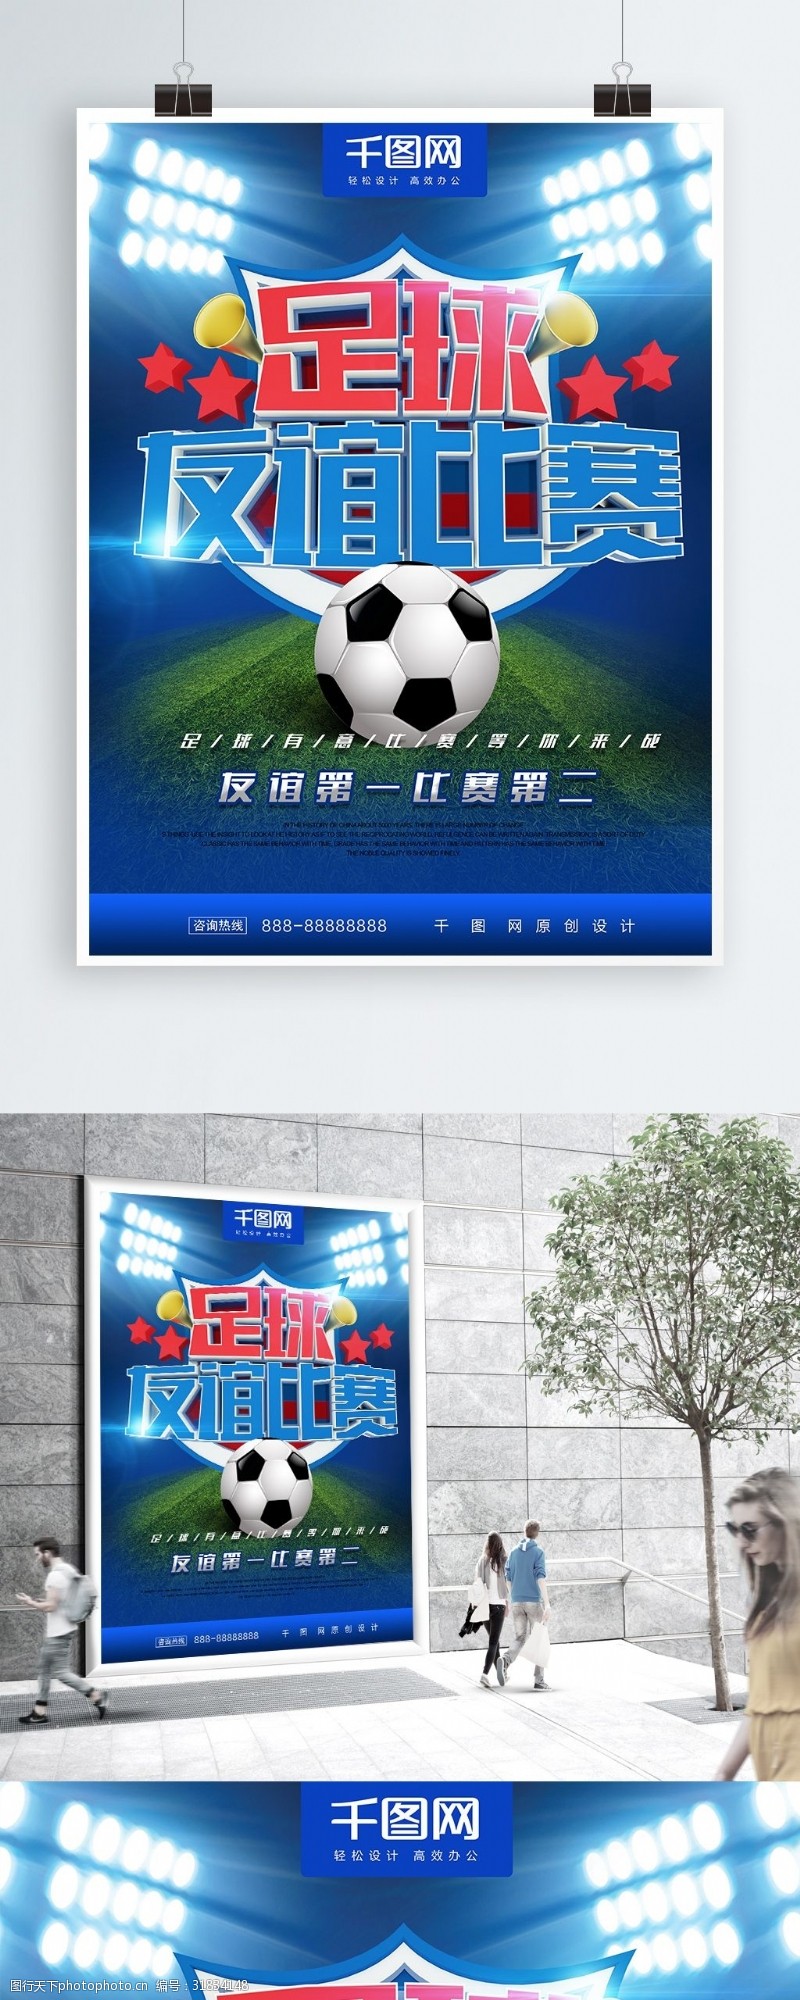 友谊赛足球比赛体育宣传海报